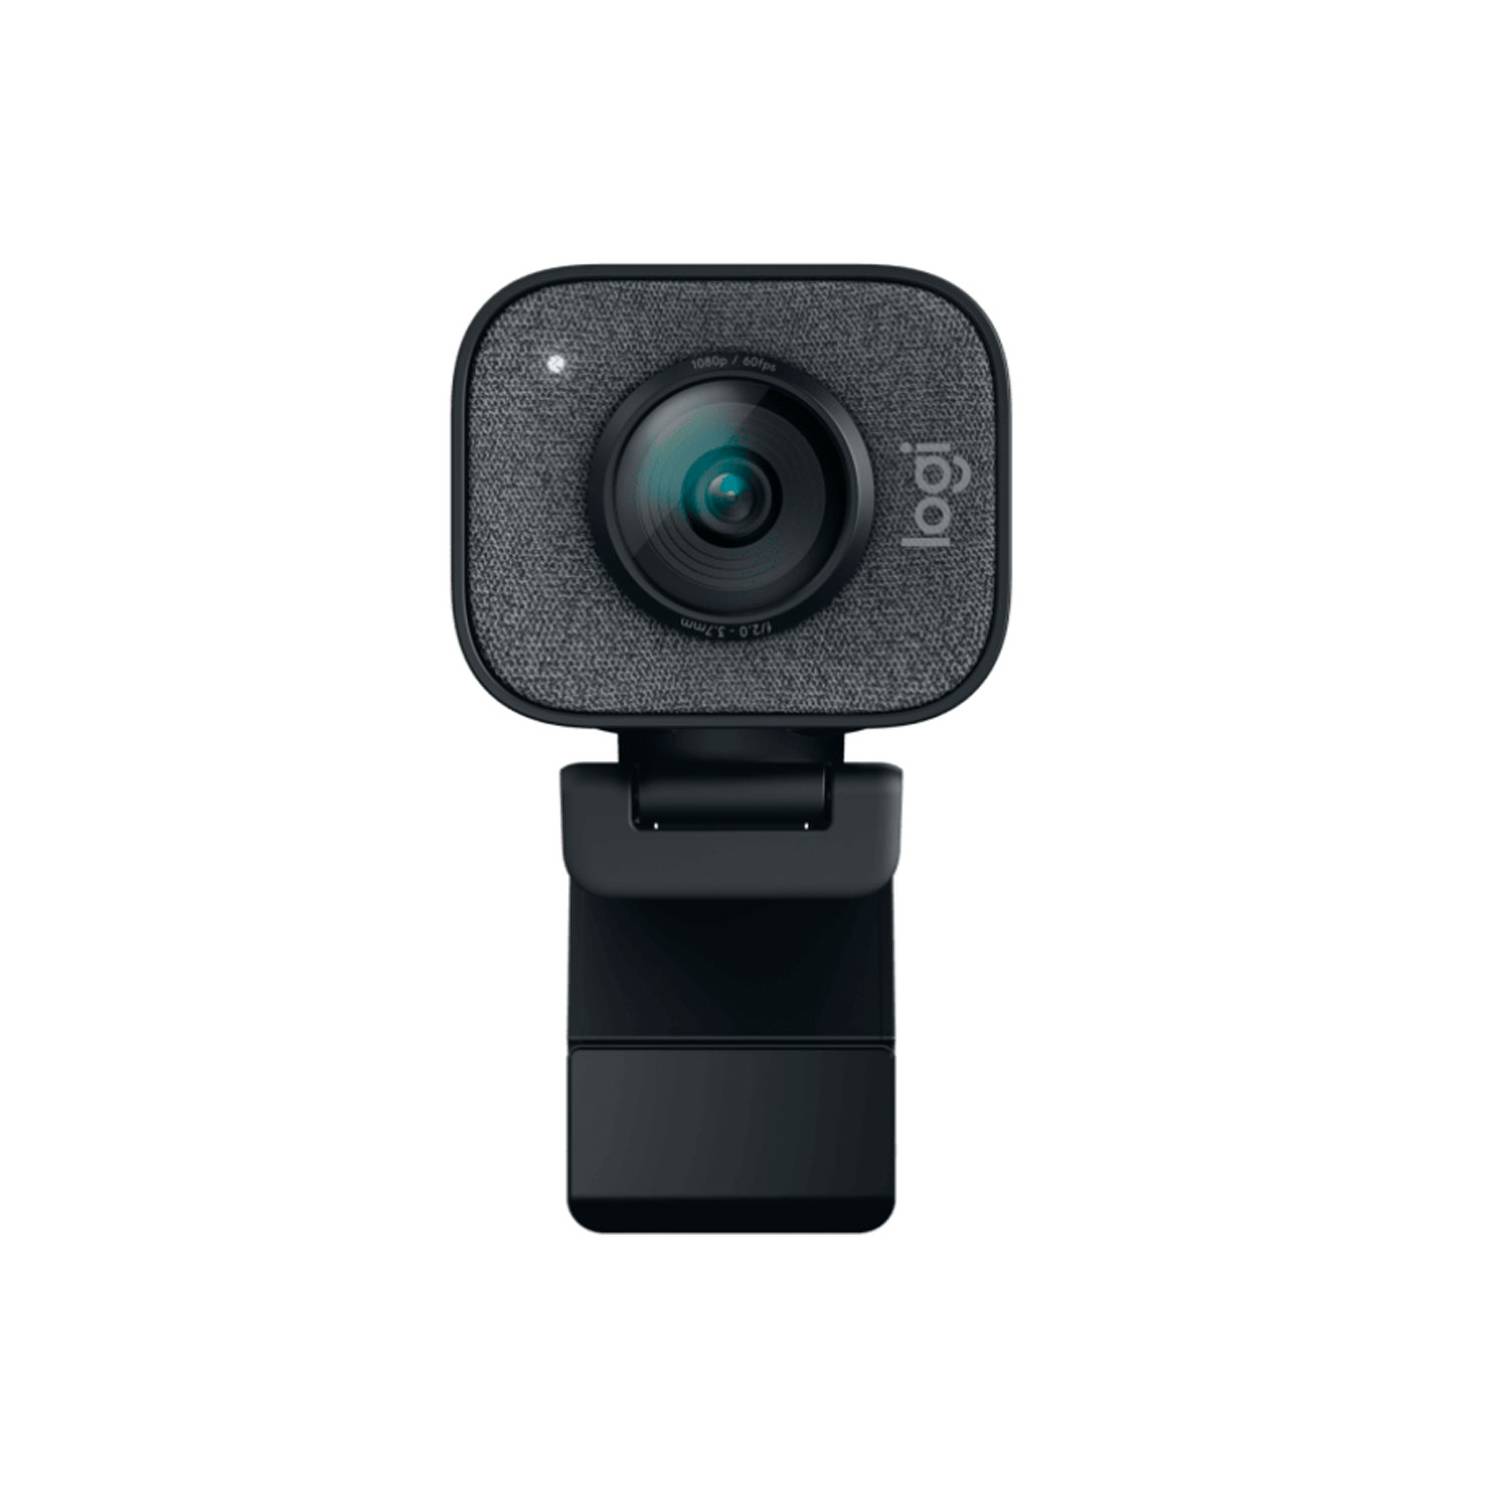 Camara Web Webcam Logitech Stream Cam Plus 1080p Con Tripode